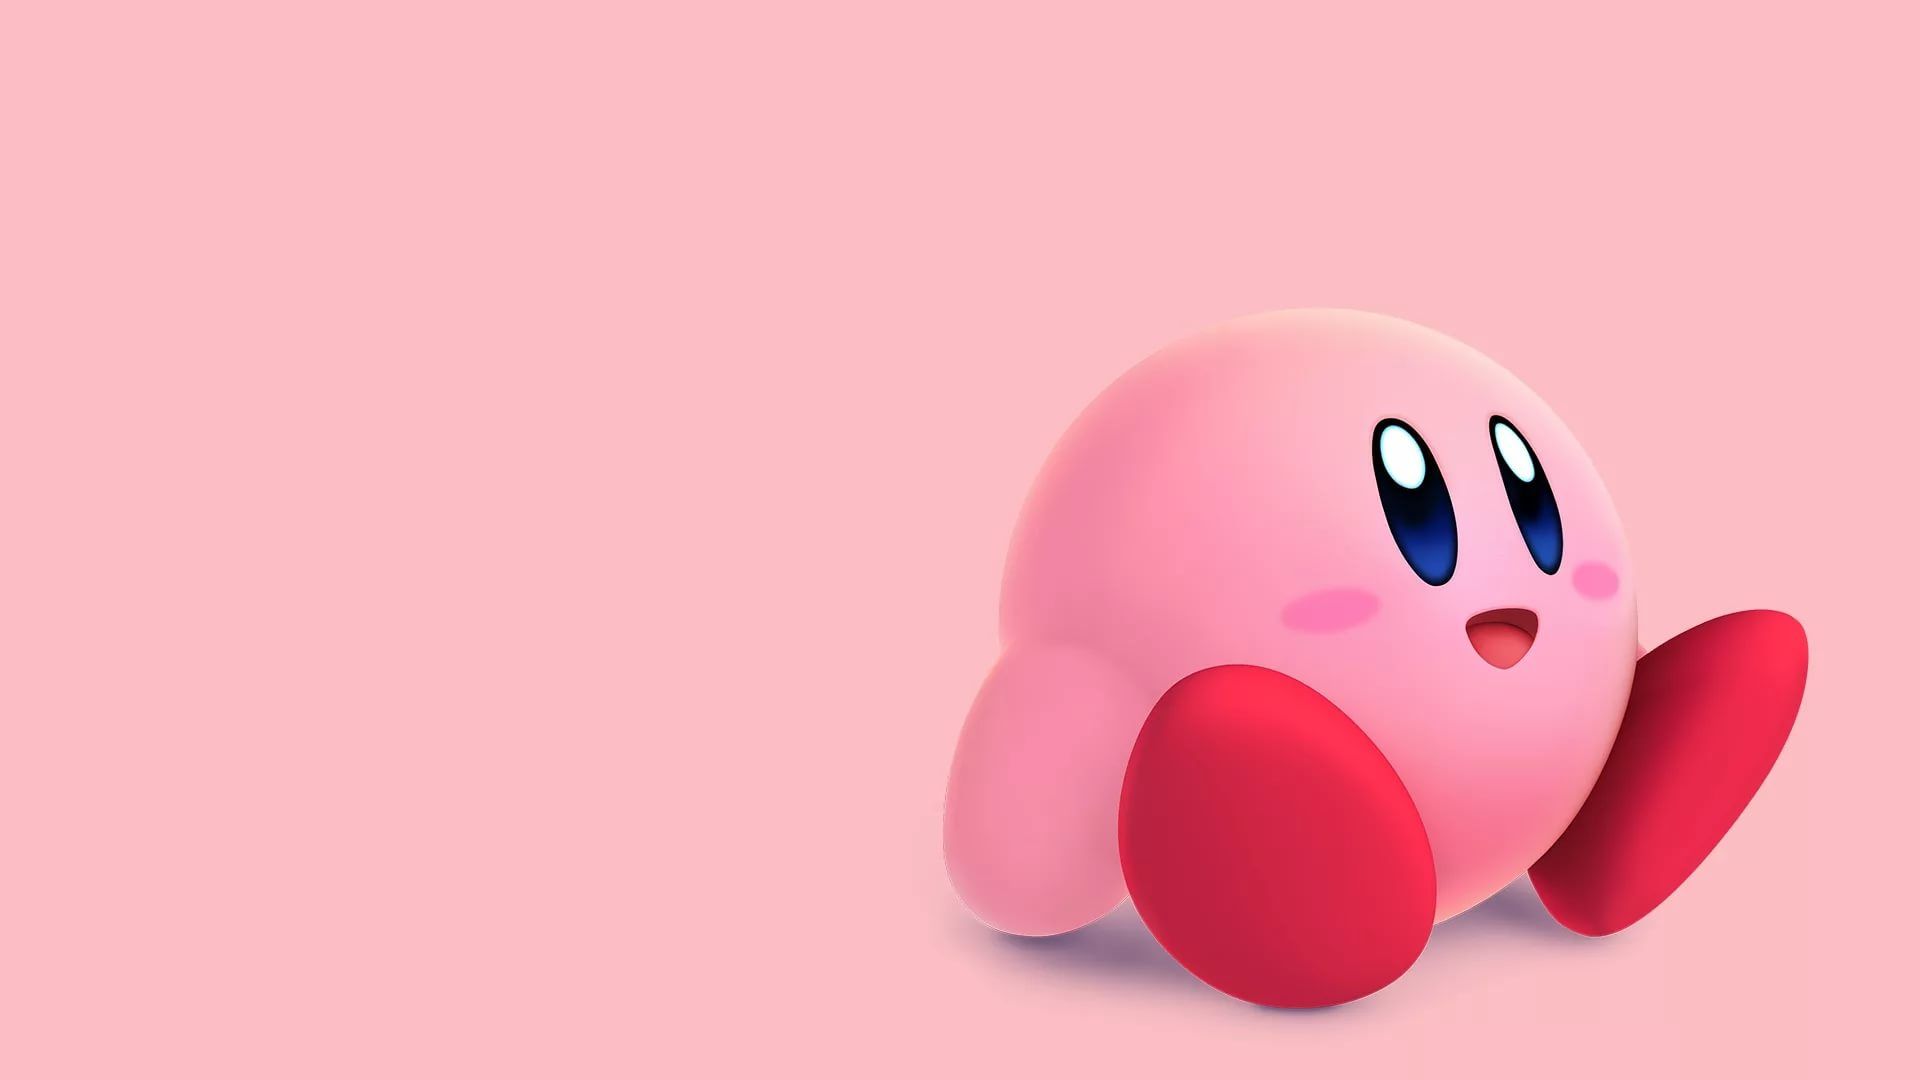 Hình nền Kirby vừa dễ thương vừa đơn giản, hoàn toàn phù hợp cho tất cả mọi người và mọi lứa tuổi!